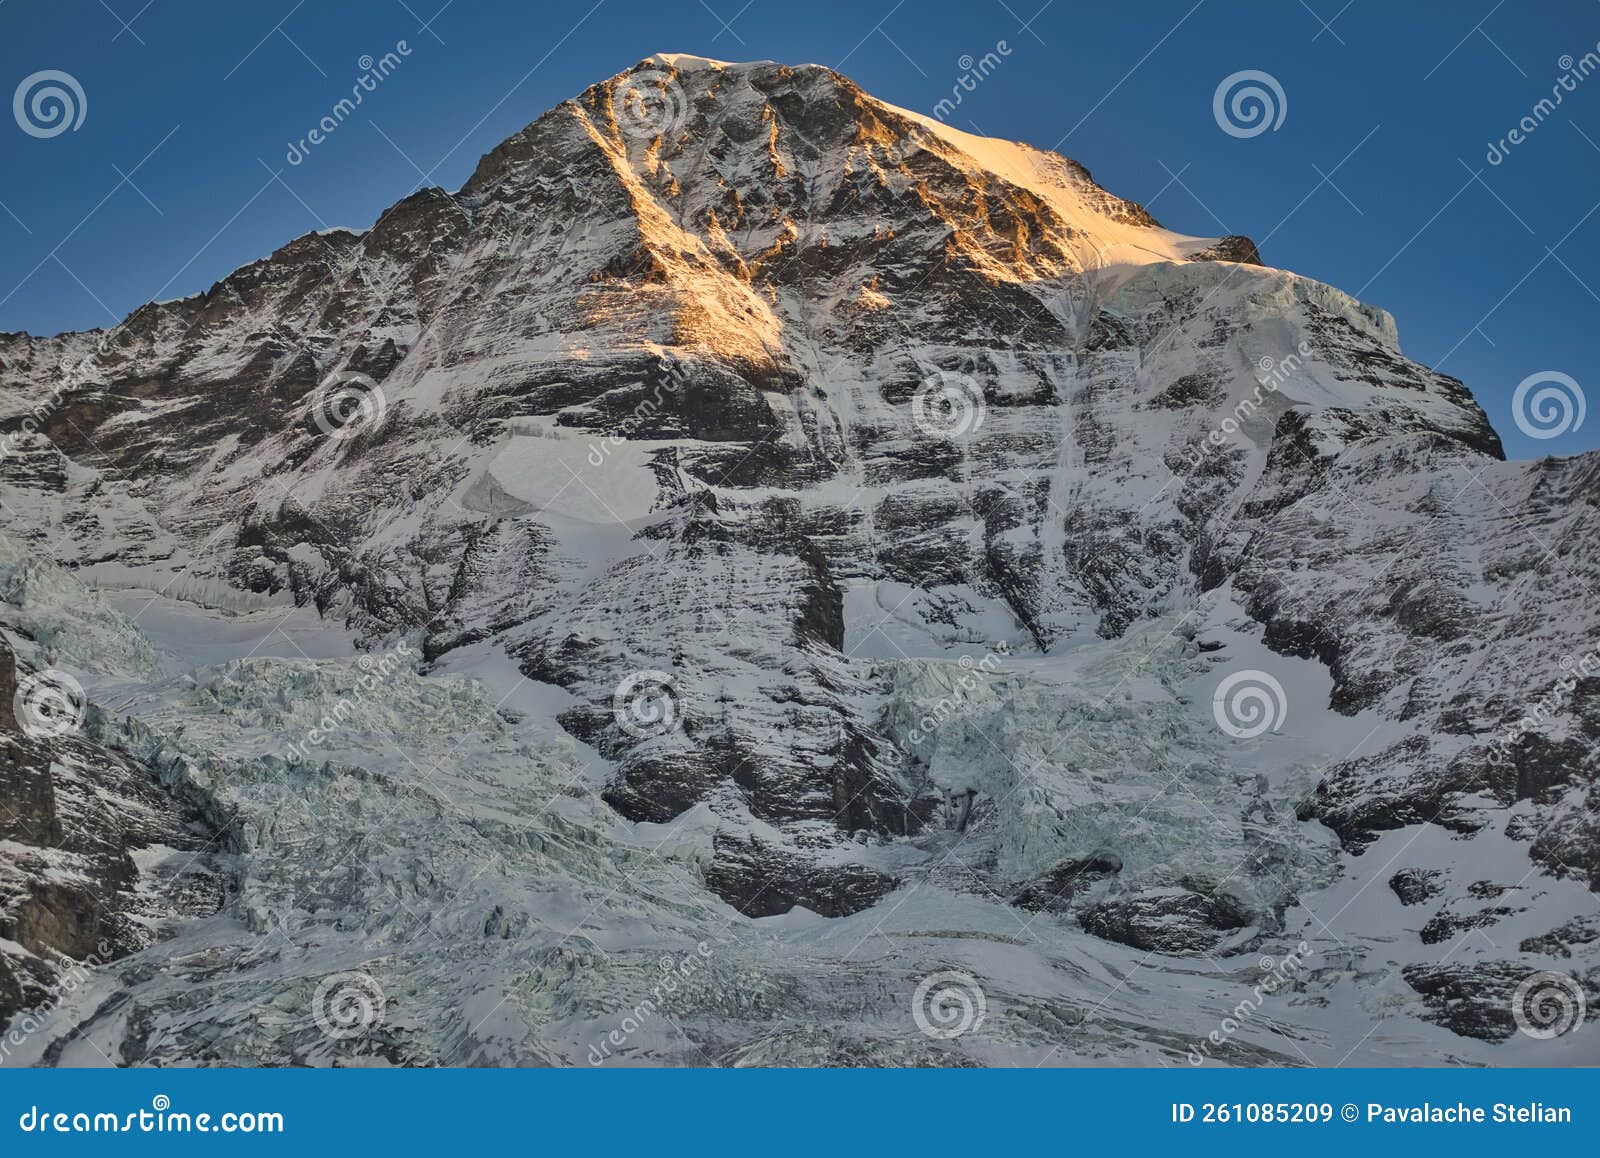 kleine scheidegg eiger and jungfraujoch bernese alps